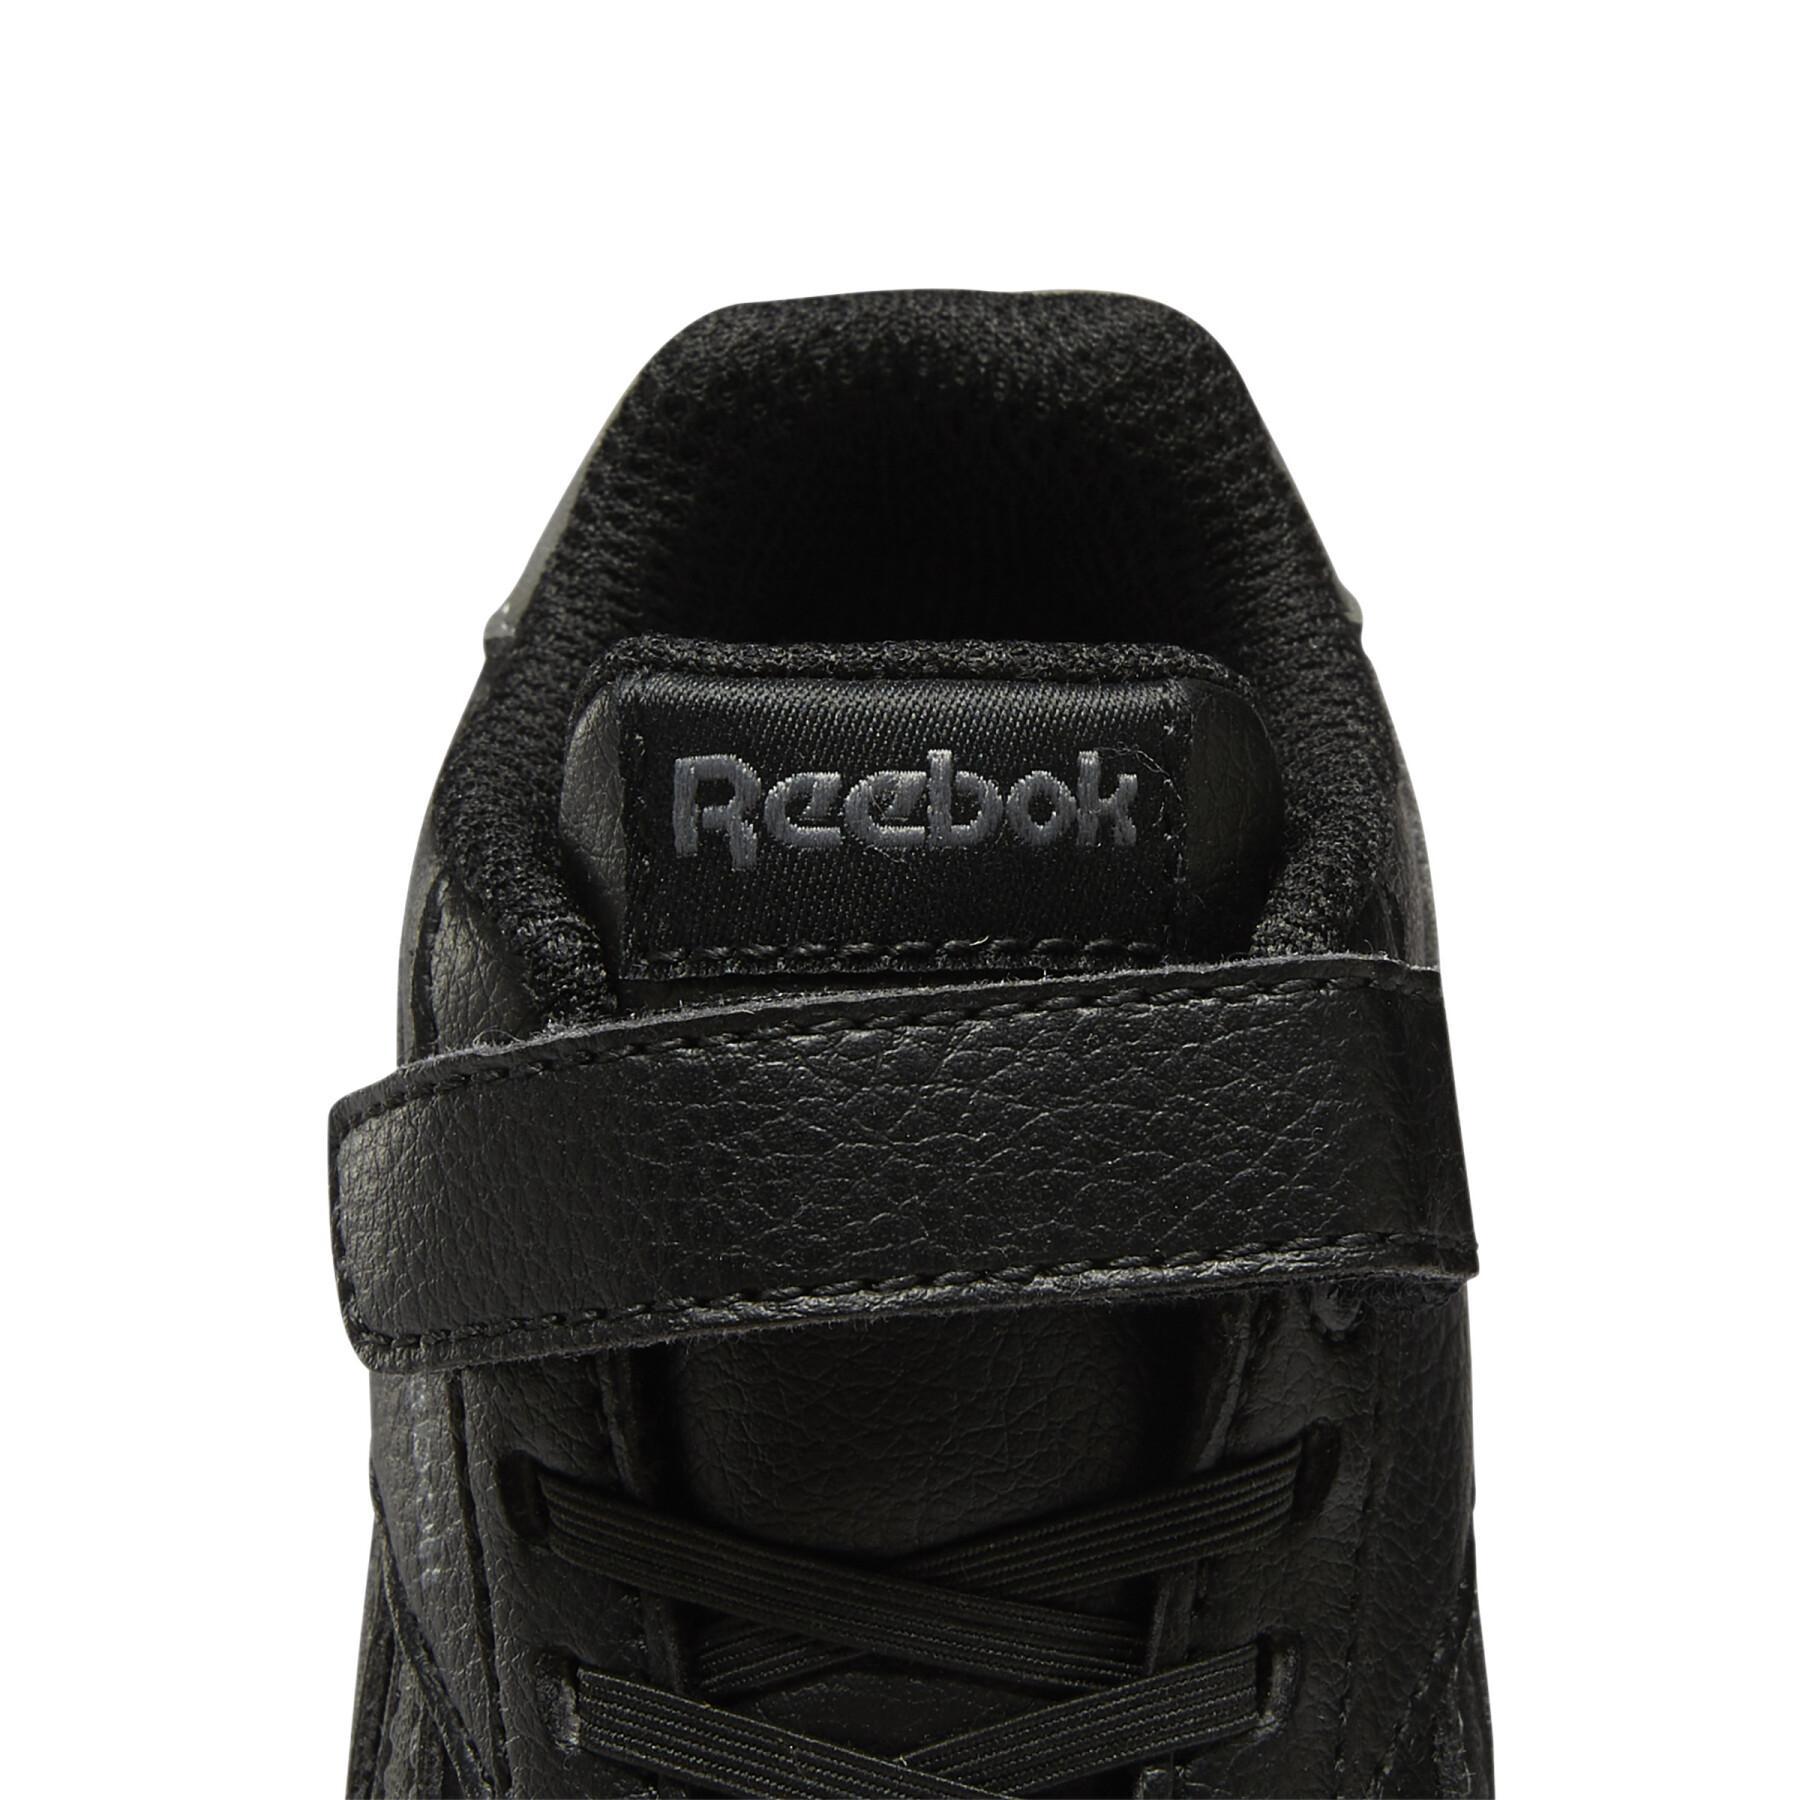 Baby shoes Reebok Royal Jogger 3